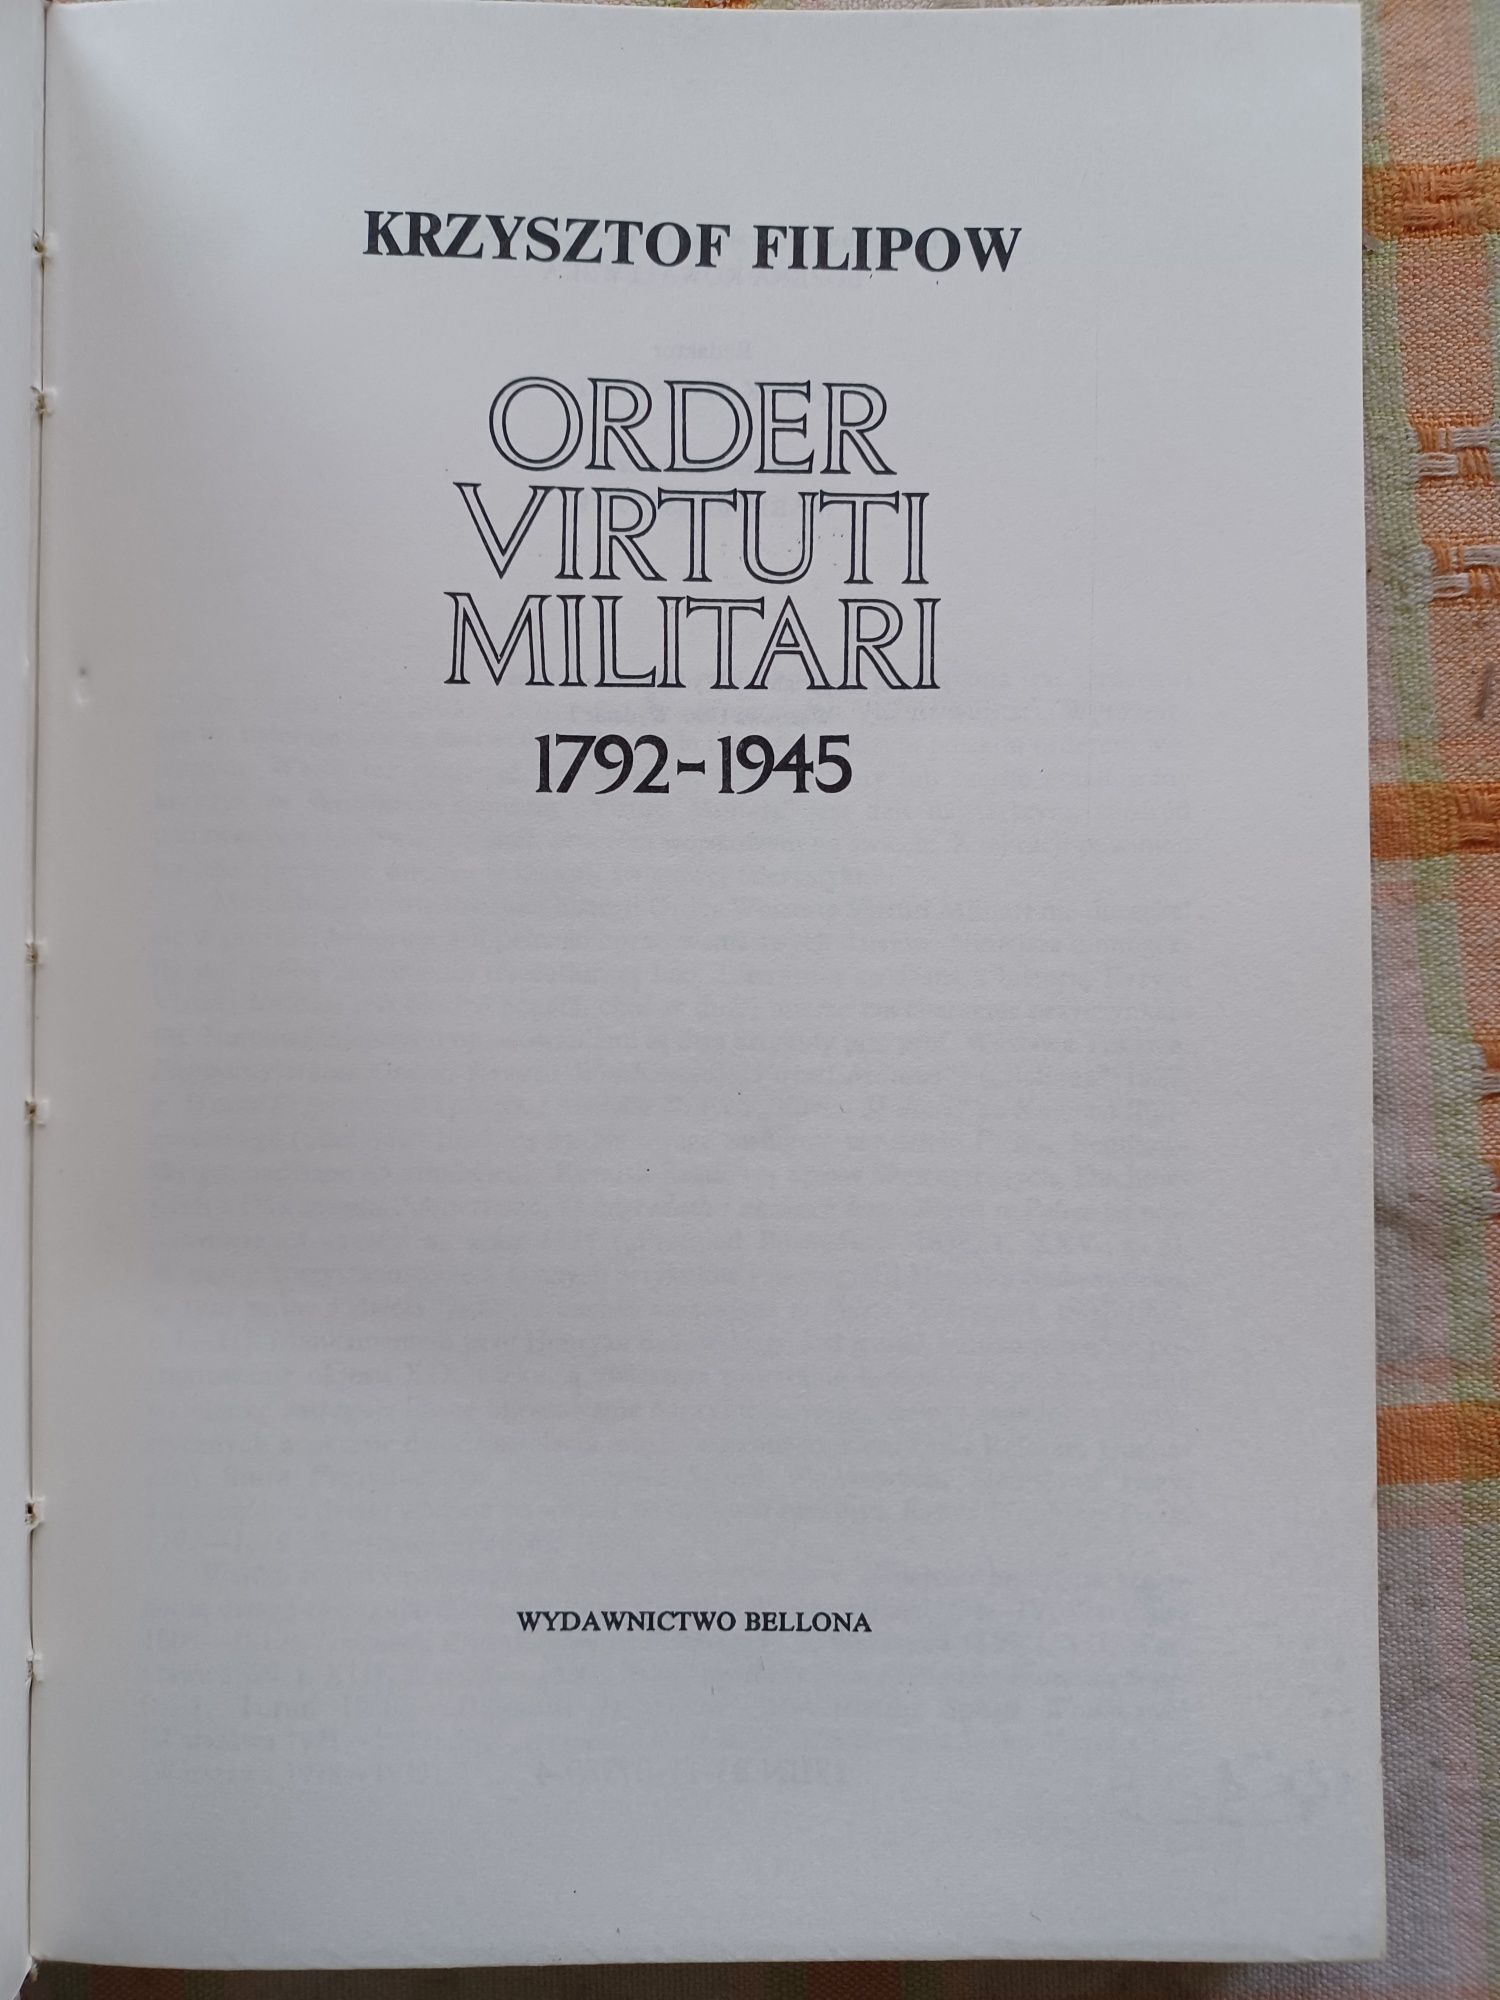 Order Virtuti Militari 1792-39 K. Filipow